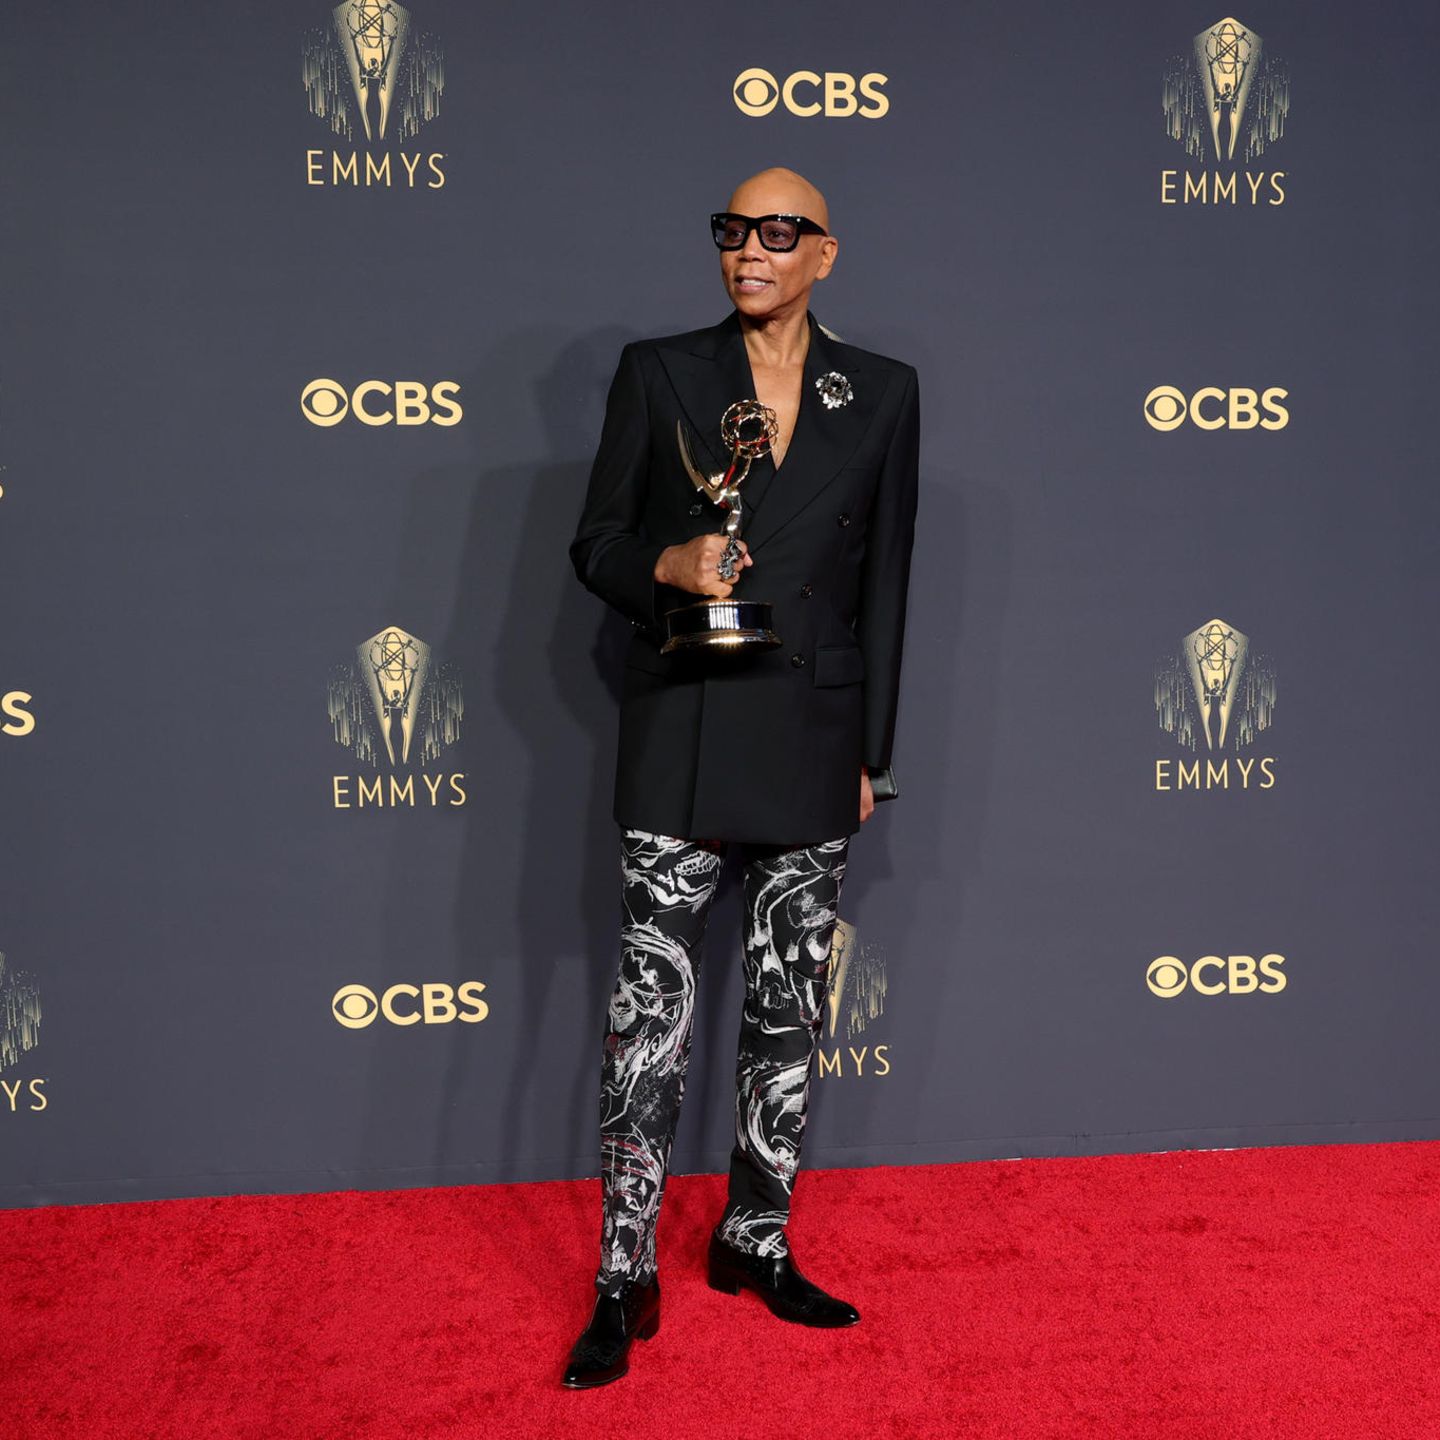 Für die Serie "RuPaul's Drag Race" hat RuPaul den 24. Emmy bekommen. Damit schreibt er Geschichte. Auf dem roten Teppich trägt er einen eleganten Anzug von Calvin Klein. 